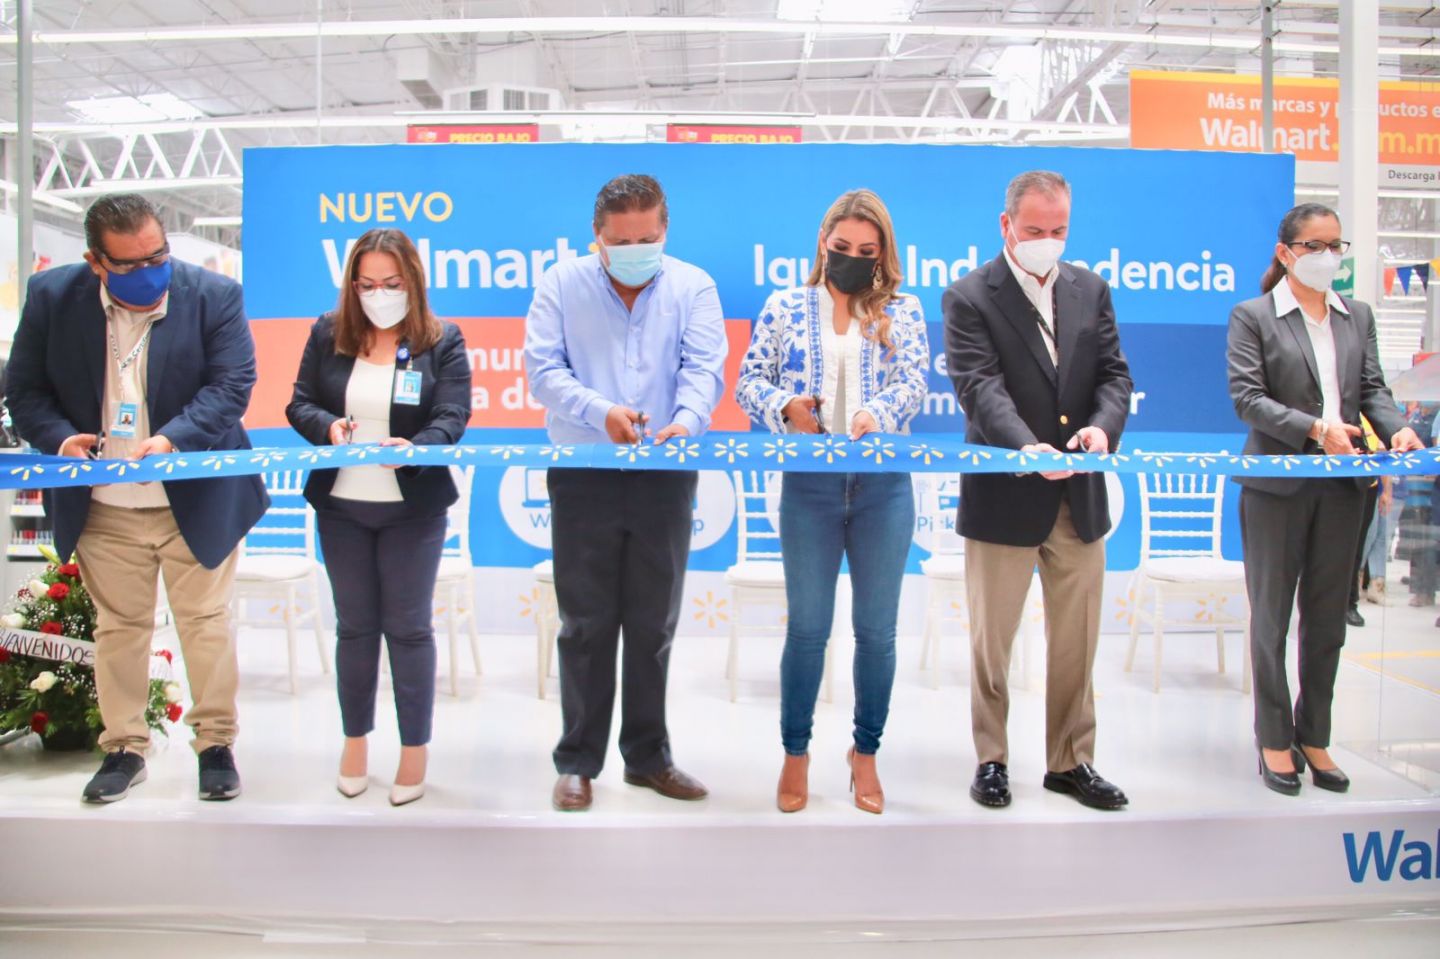 Inaugura gobernadora Evelyn Salgado sucursal de Walmart en Iguala con inversión de 250 mdp